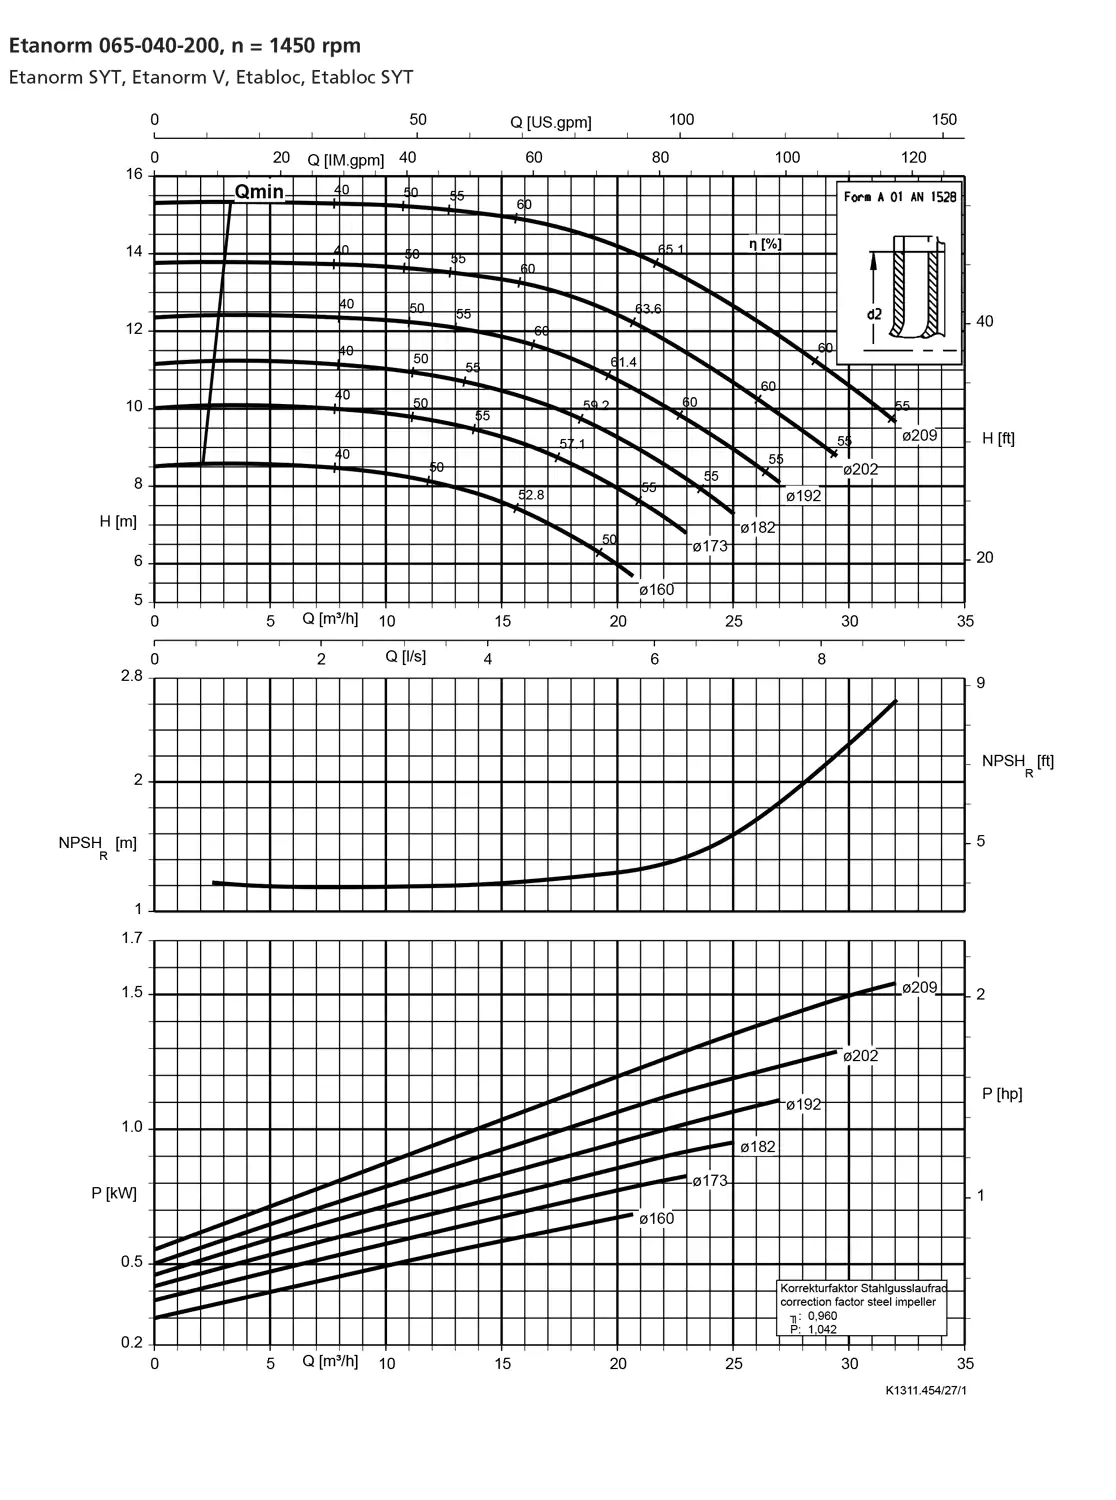 نمودار-کارکرد-پمپ-etanorm-65-040-200-1450